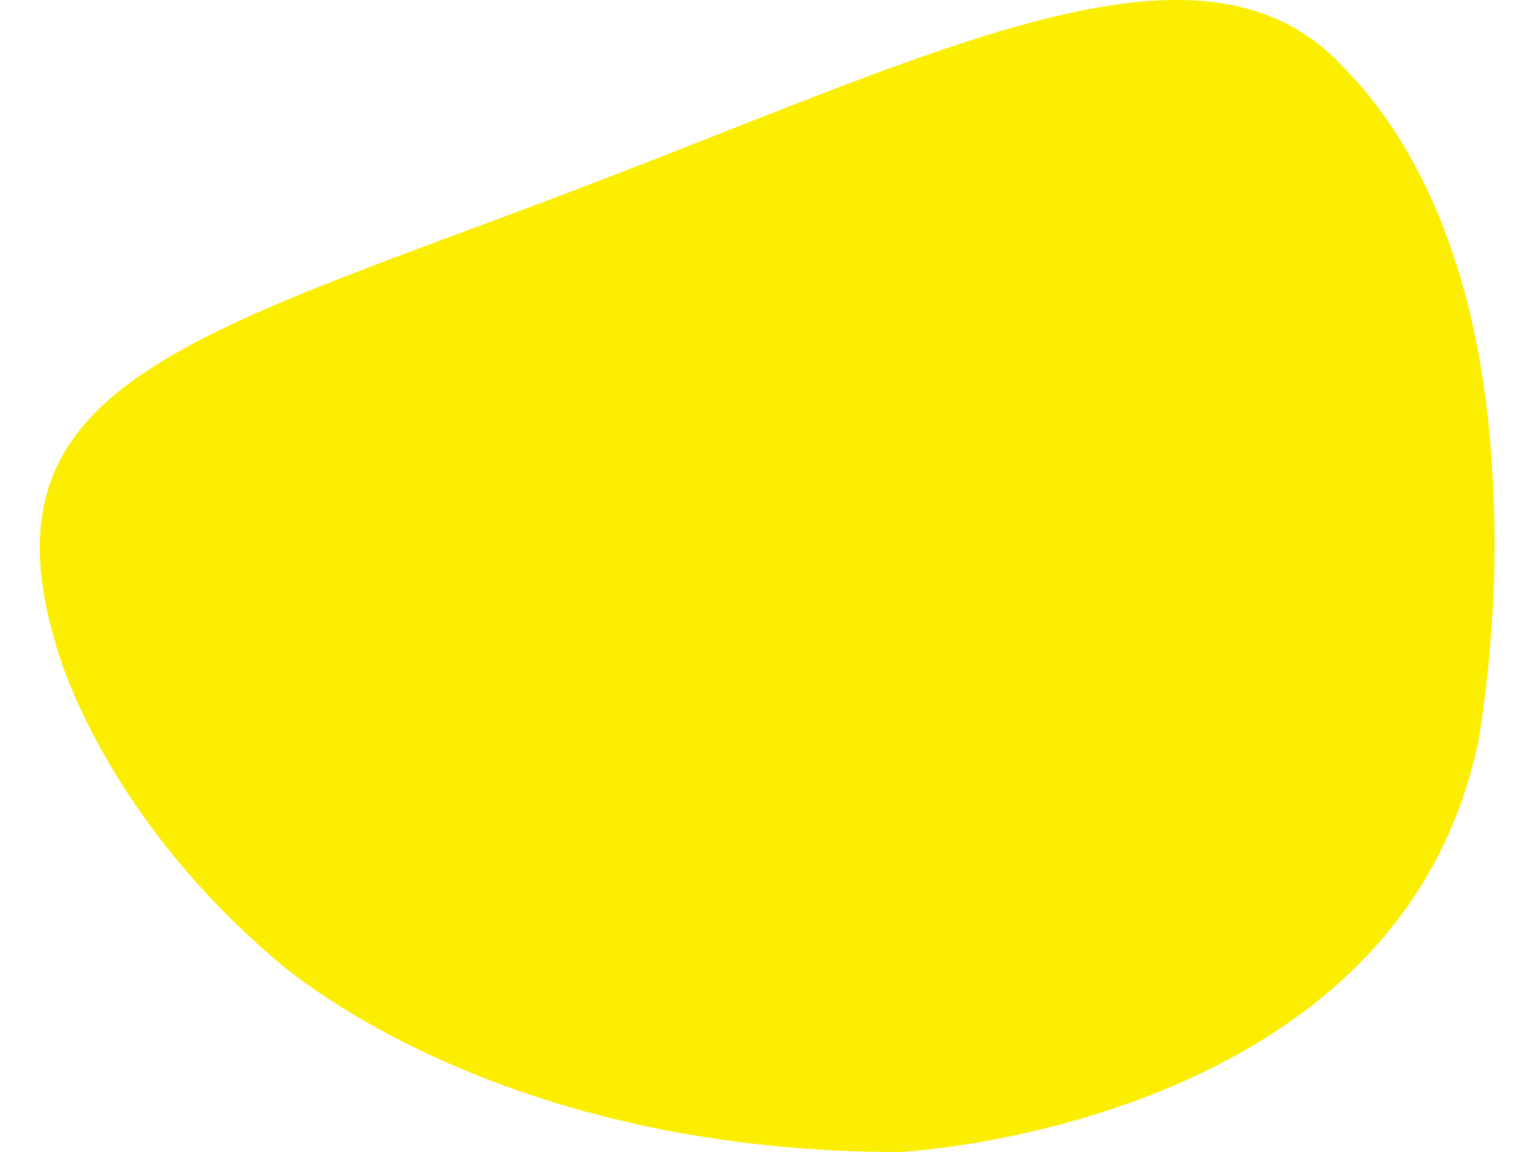 Burbuja amarilla decorativa